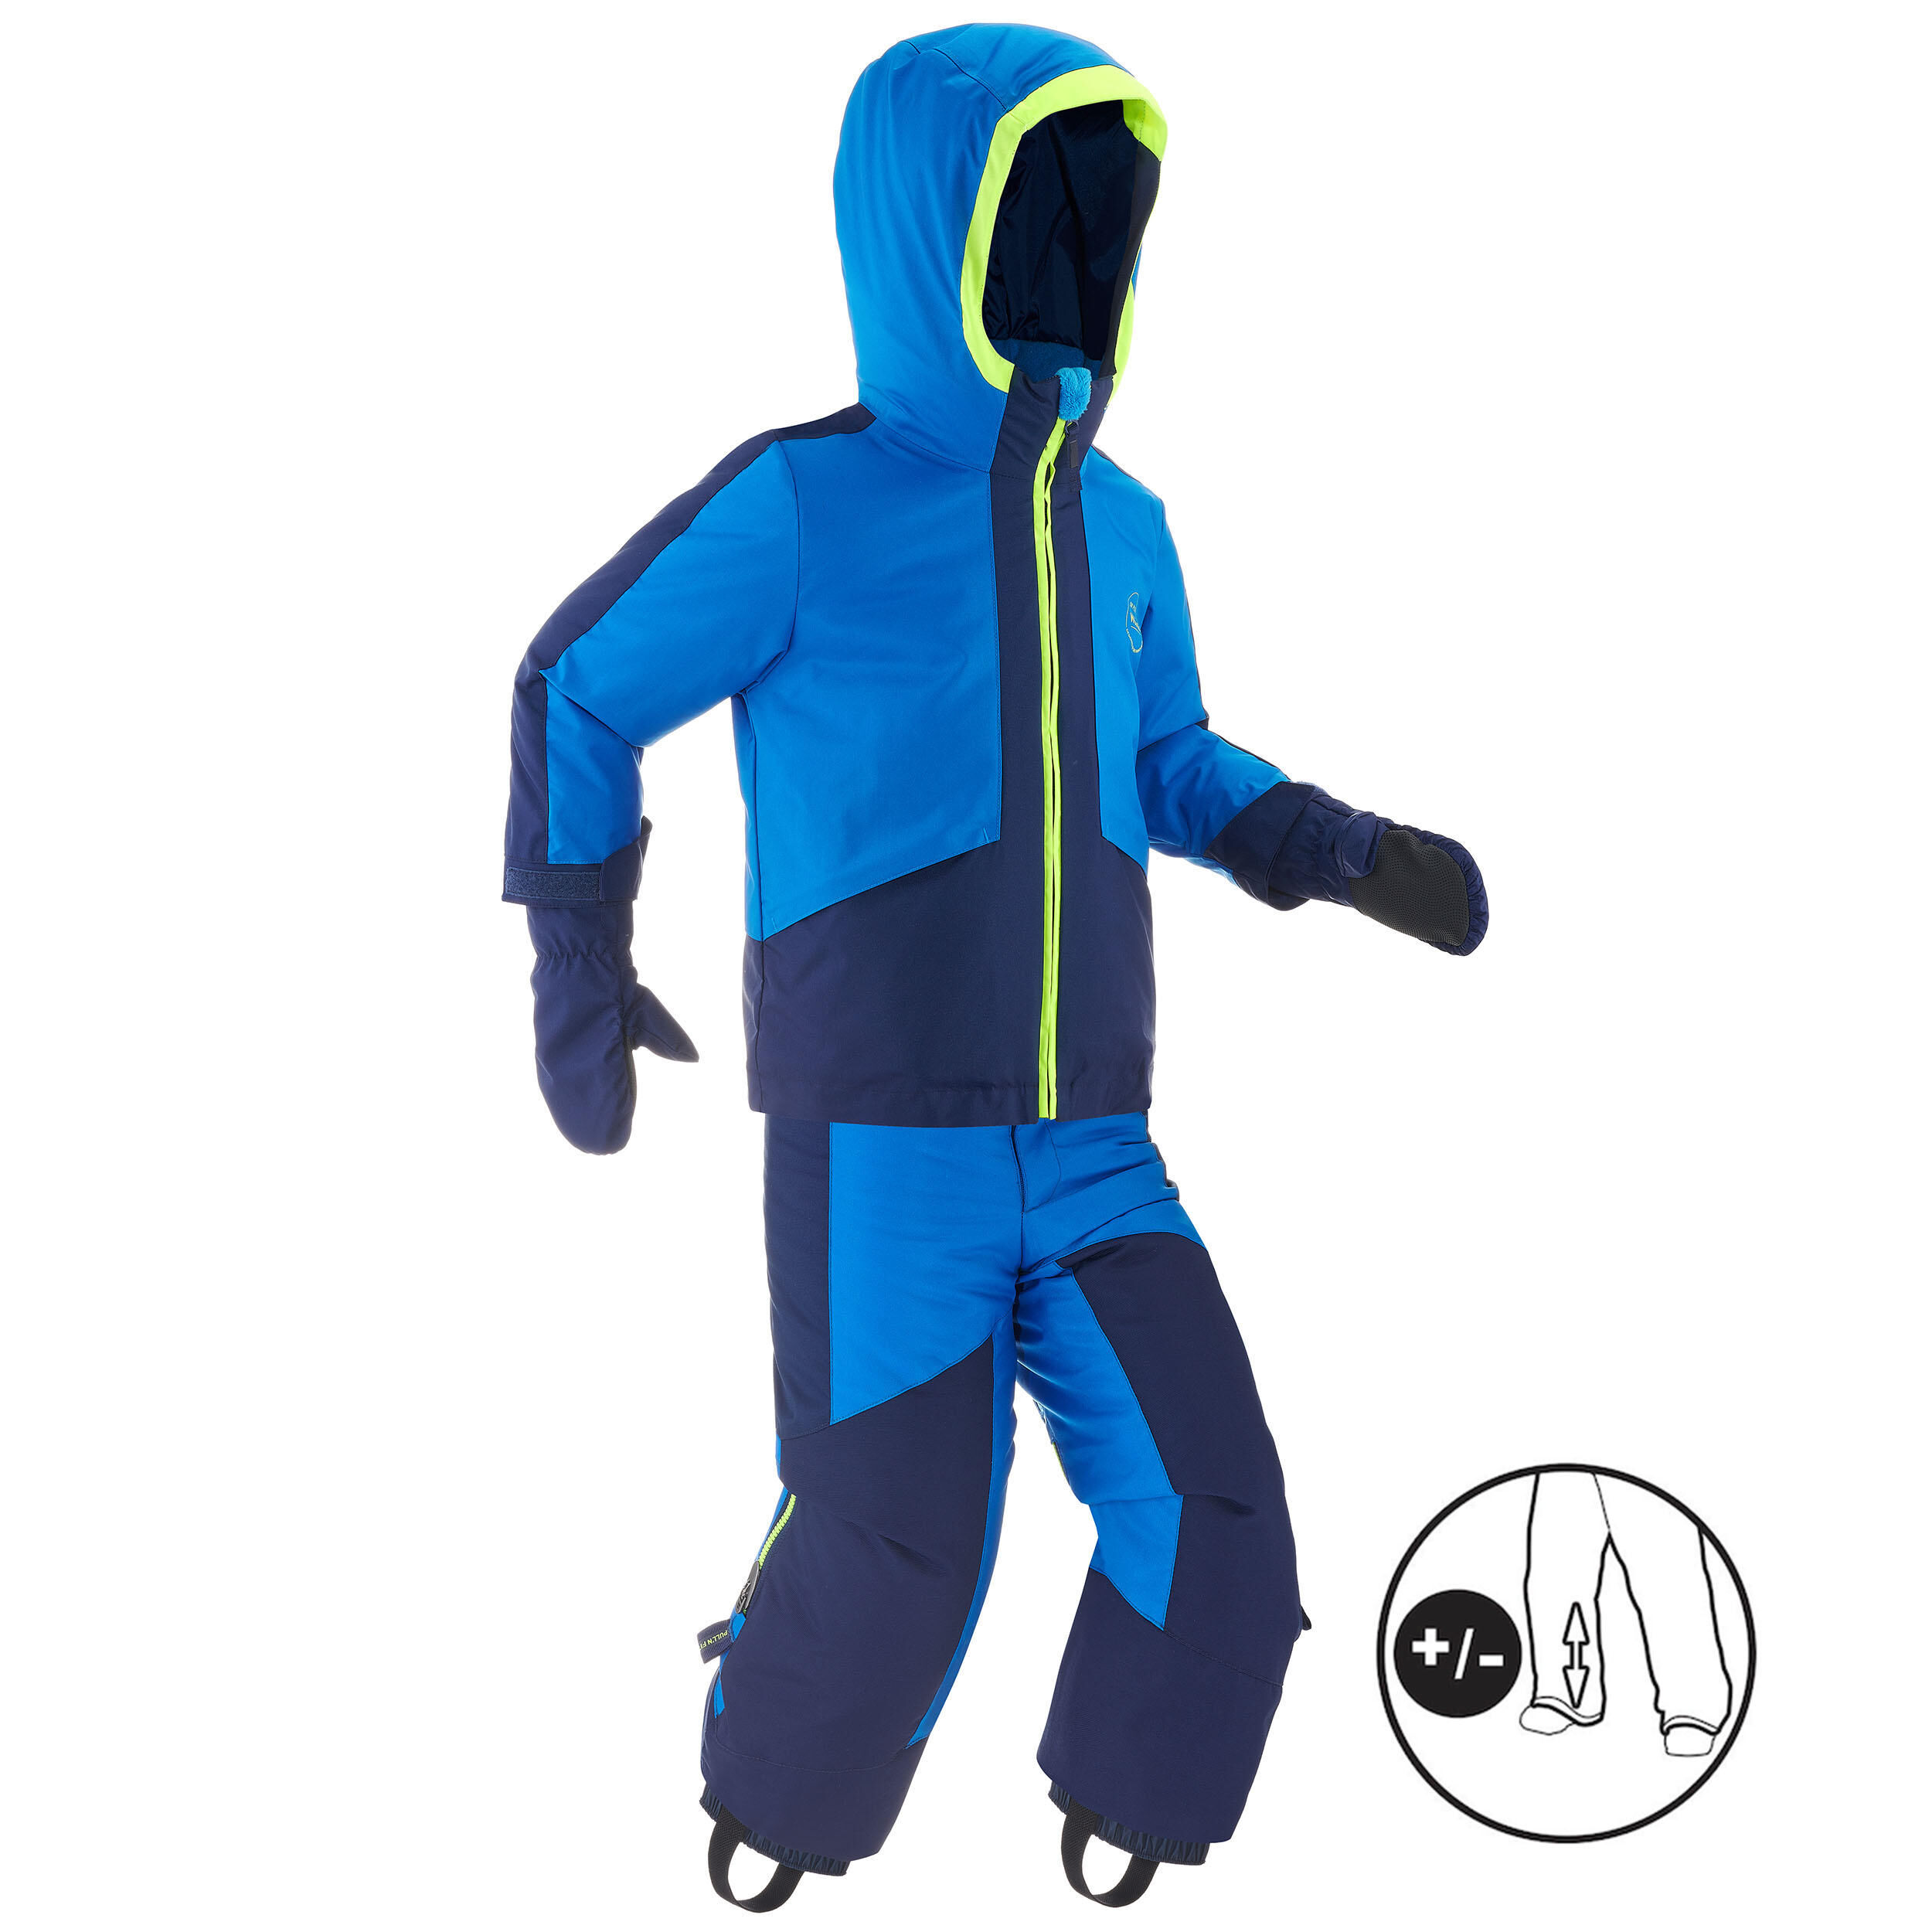 WEDZE Kids’ Warm and Waterproof Ski Suit 580 - Blue